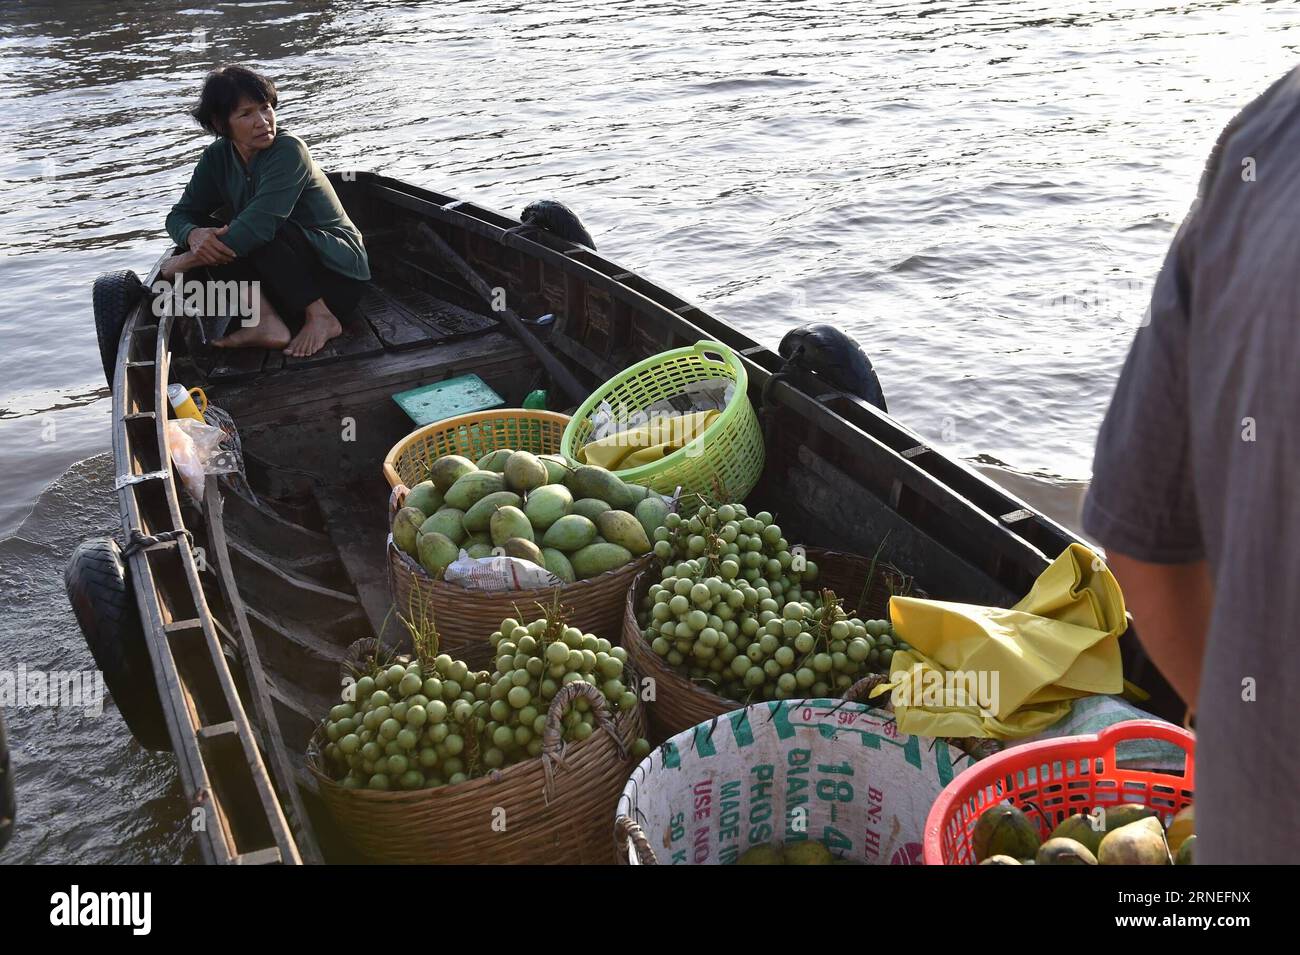 (160621) -- CAN THO, 21 juin 2016 -- Un vendeur vietnamien vend des fruits dans le plus grand marché flottant de CAN Tho, Cai rang, Vietnam, 21 juin 2016. CAN Tho, à environ 170 km de Ho Chin Minh-ville dans le delta du Mékong, est célèbre pour ses marchés flottants où les gens peuvent acheter des fruits, des produits agricoles et des collations.) VIETNAM-CAN THO-MARCHÉ FLOTTANT LexYanna PUBLICATIONxNOTxINxCHN 160621 CAN Tho juin 21 2016 un vendeur vietnamien vend des fruits à CAN Tho S plus grand marché flottant Cai Rank Vietnam juin 21 2016 CAN Tho environ 170 km de Ho Chin Minh ville dans le delta du Mékong EST célèbre pour son Ma flottant Banque D'Images